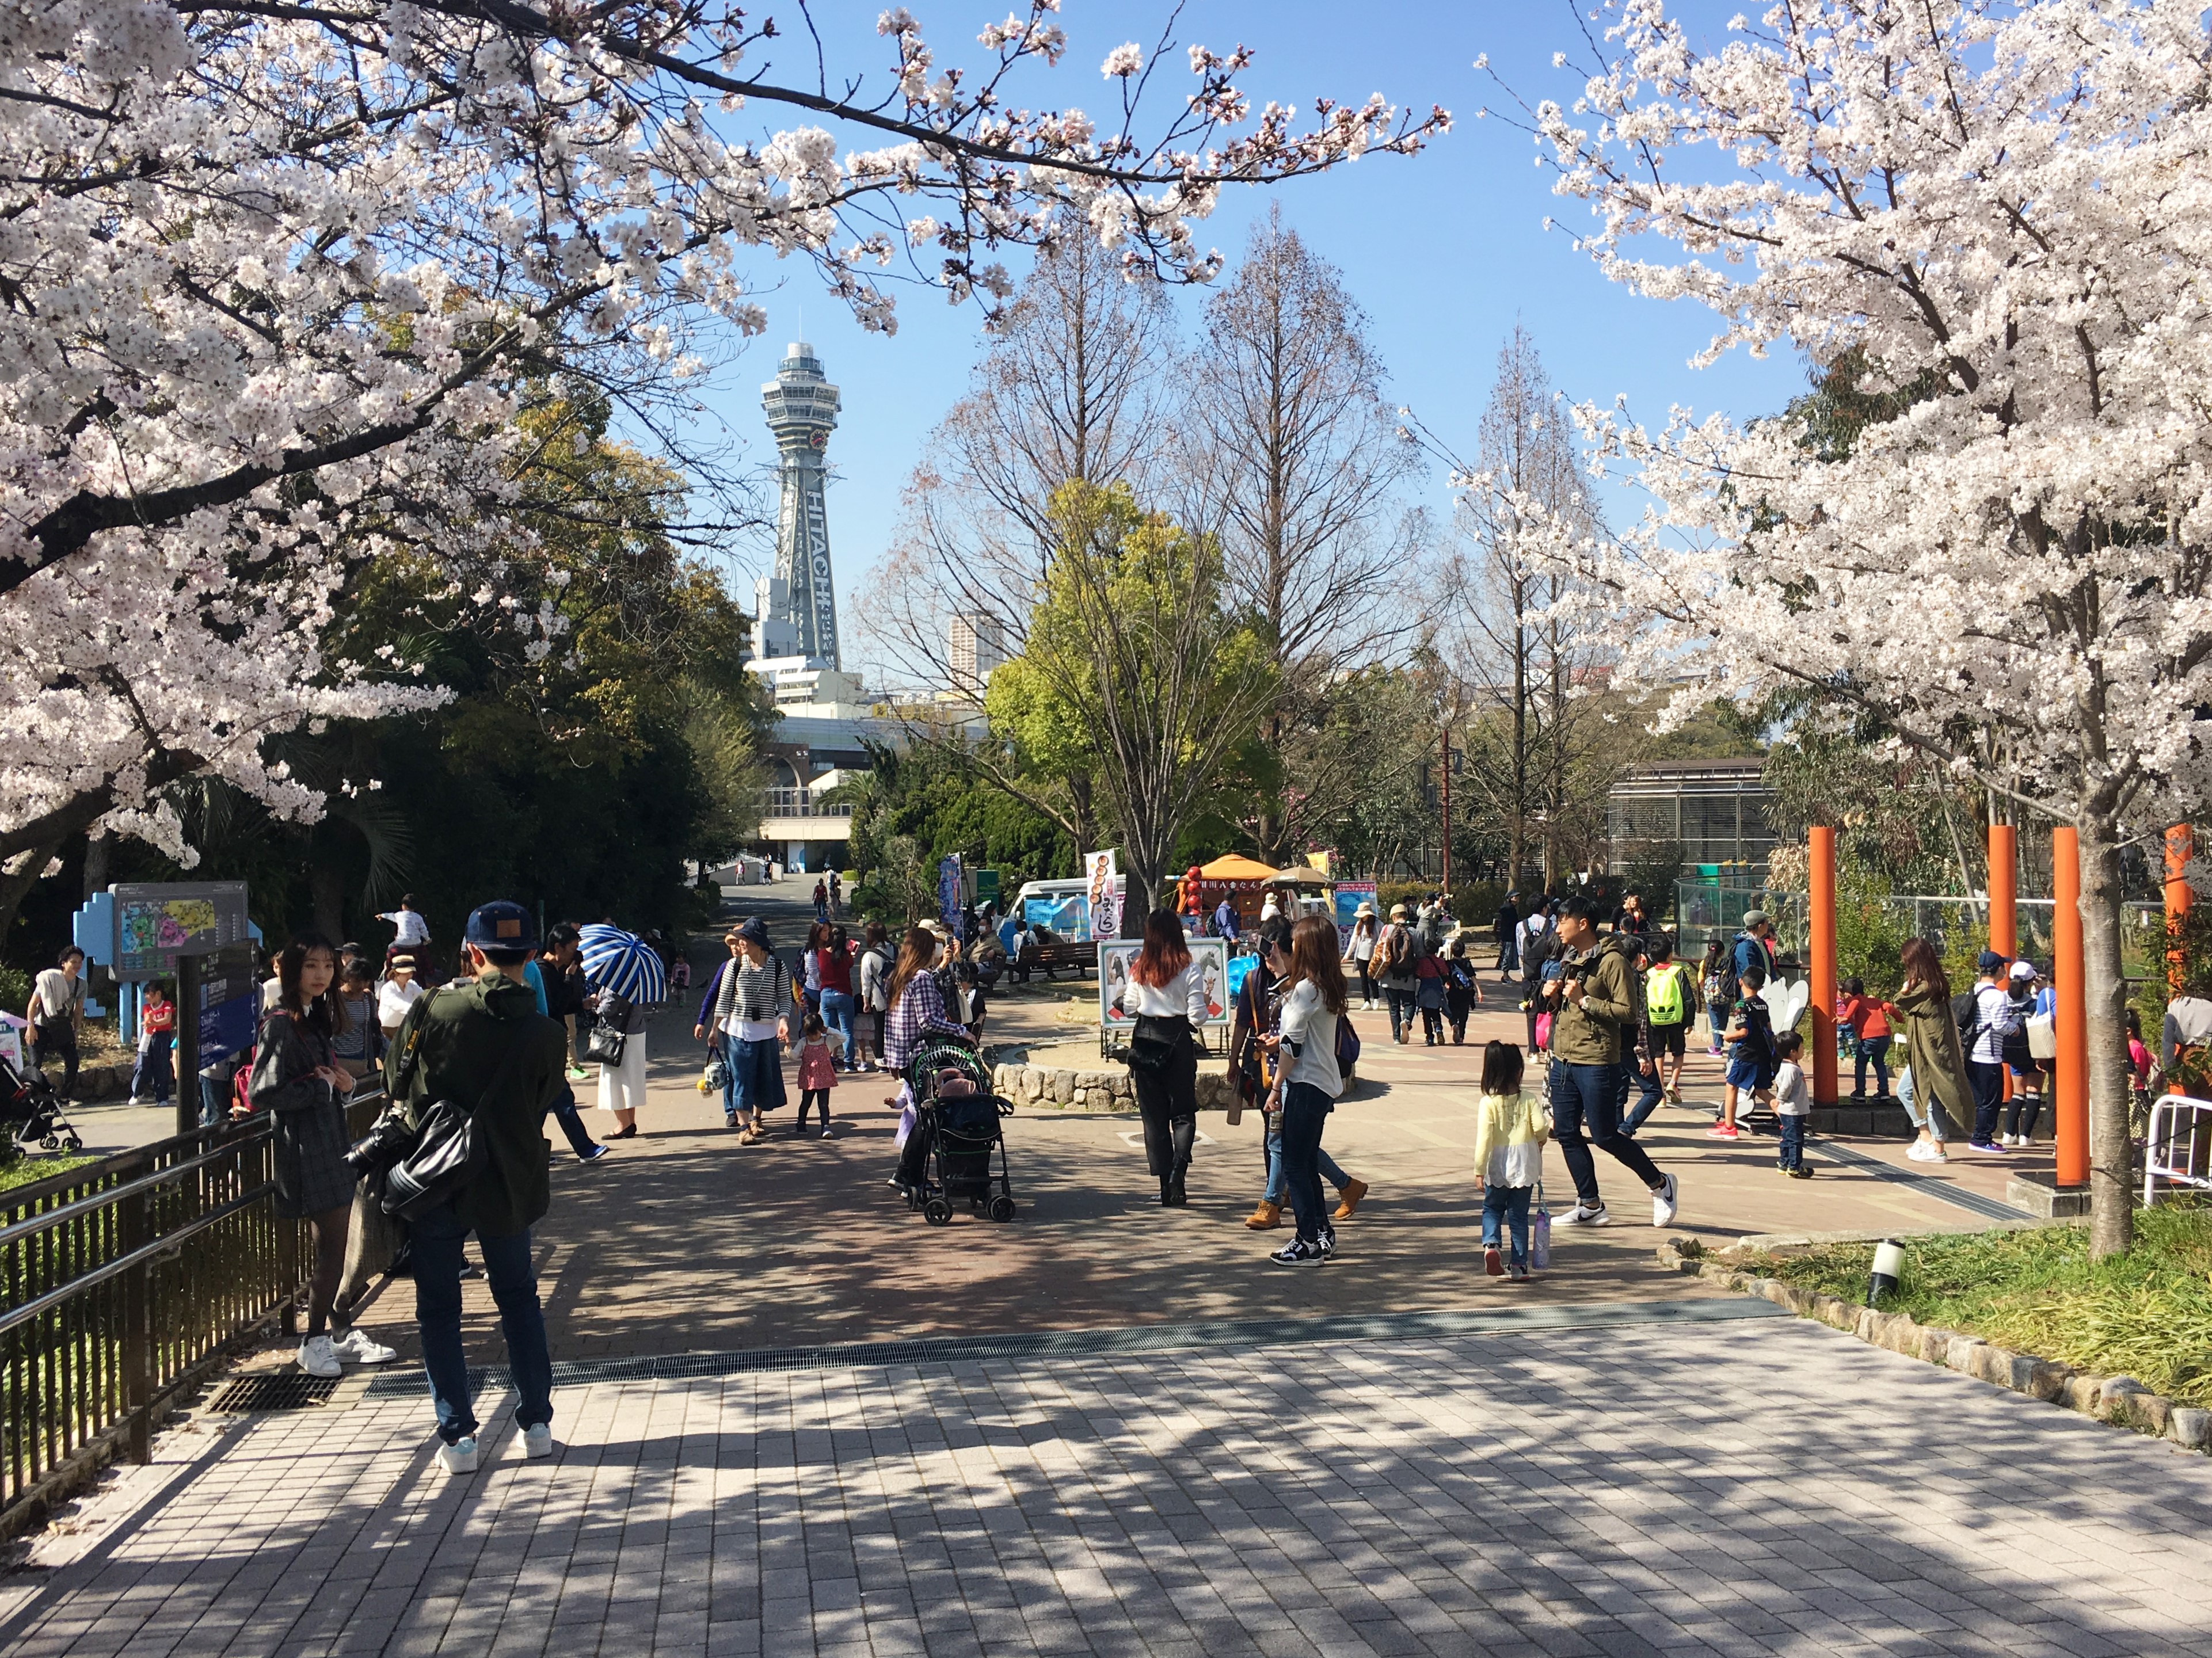 Japanese cherry blossoms at Tennoji Zoo and Tsutenkaku in background